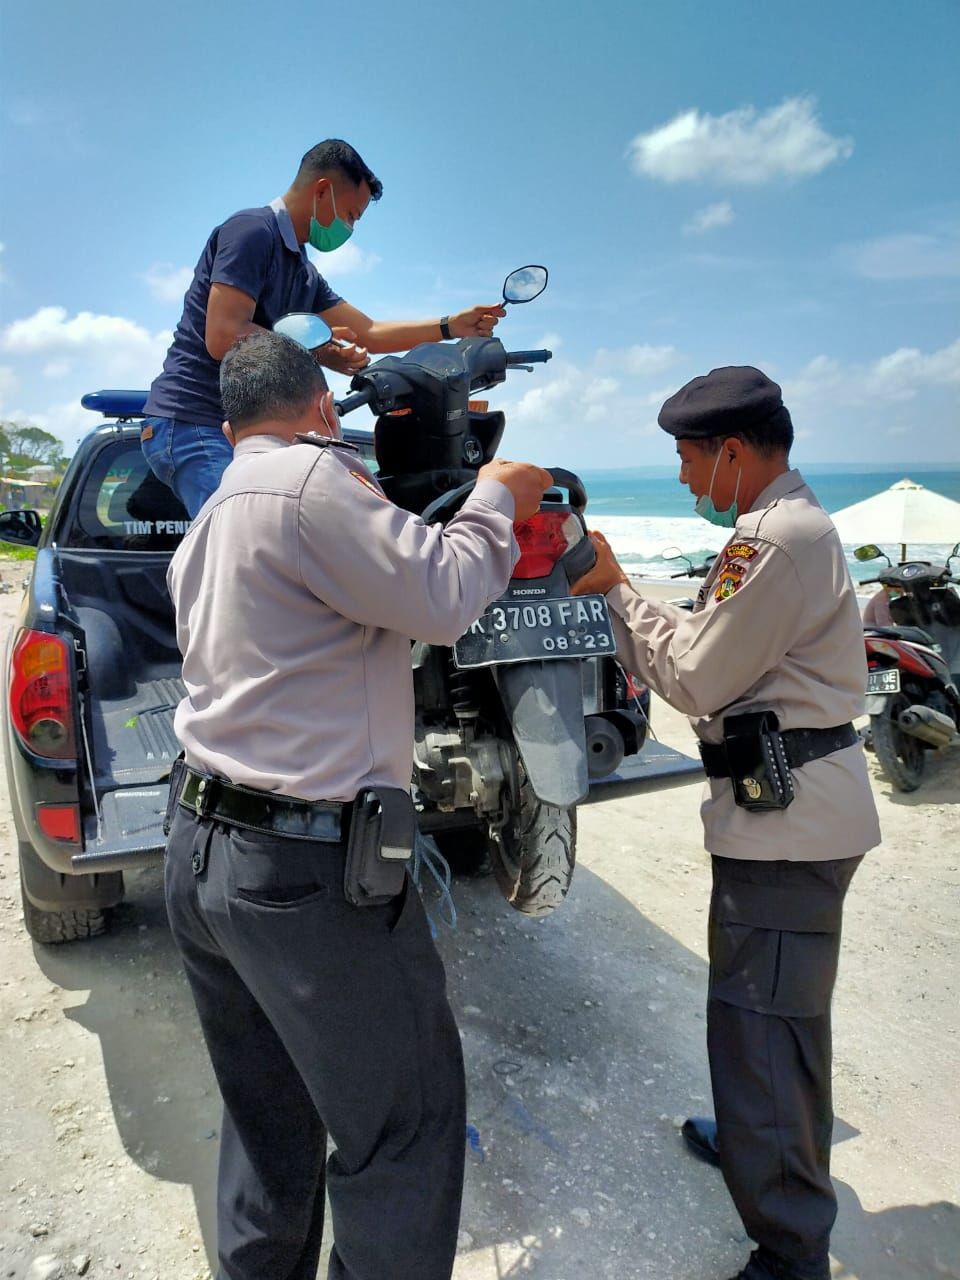 Ditemukan Motor, Pemiliknya Diduga Hilang di Pantai Batu Belig Bali